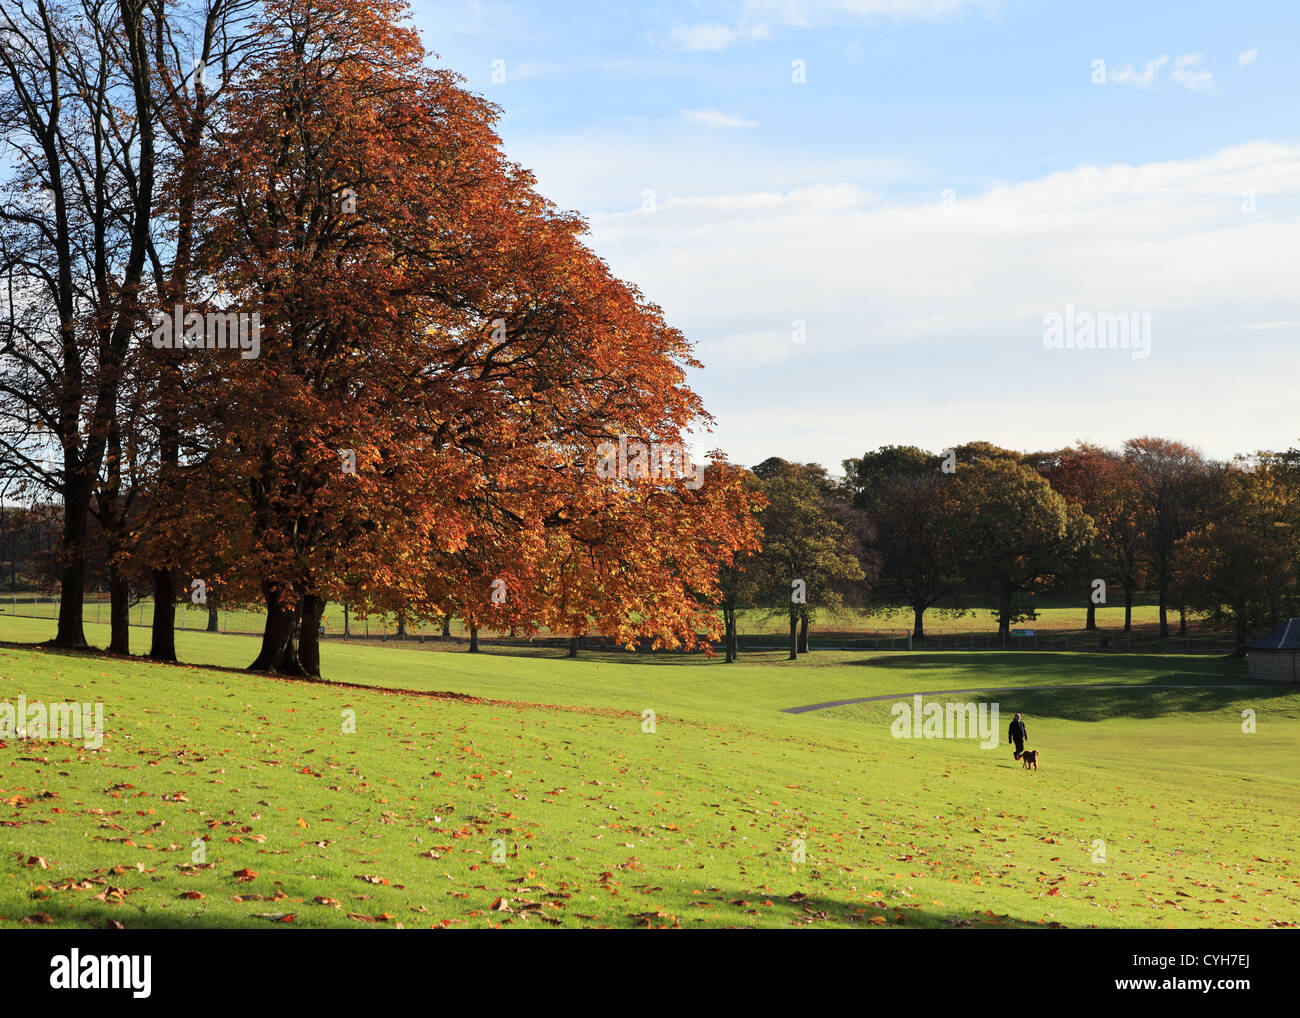 Mann, der an Bäumen vorbeigeht und Herbstfarben zeigt, im Roundhay Park Leeds, West Yorkshire, England, Großbritannien Stockfoto